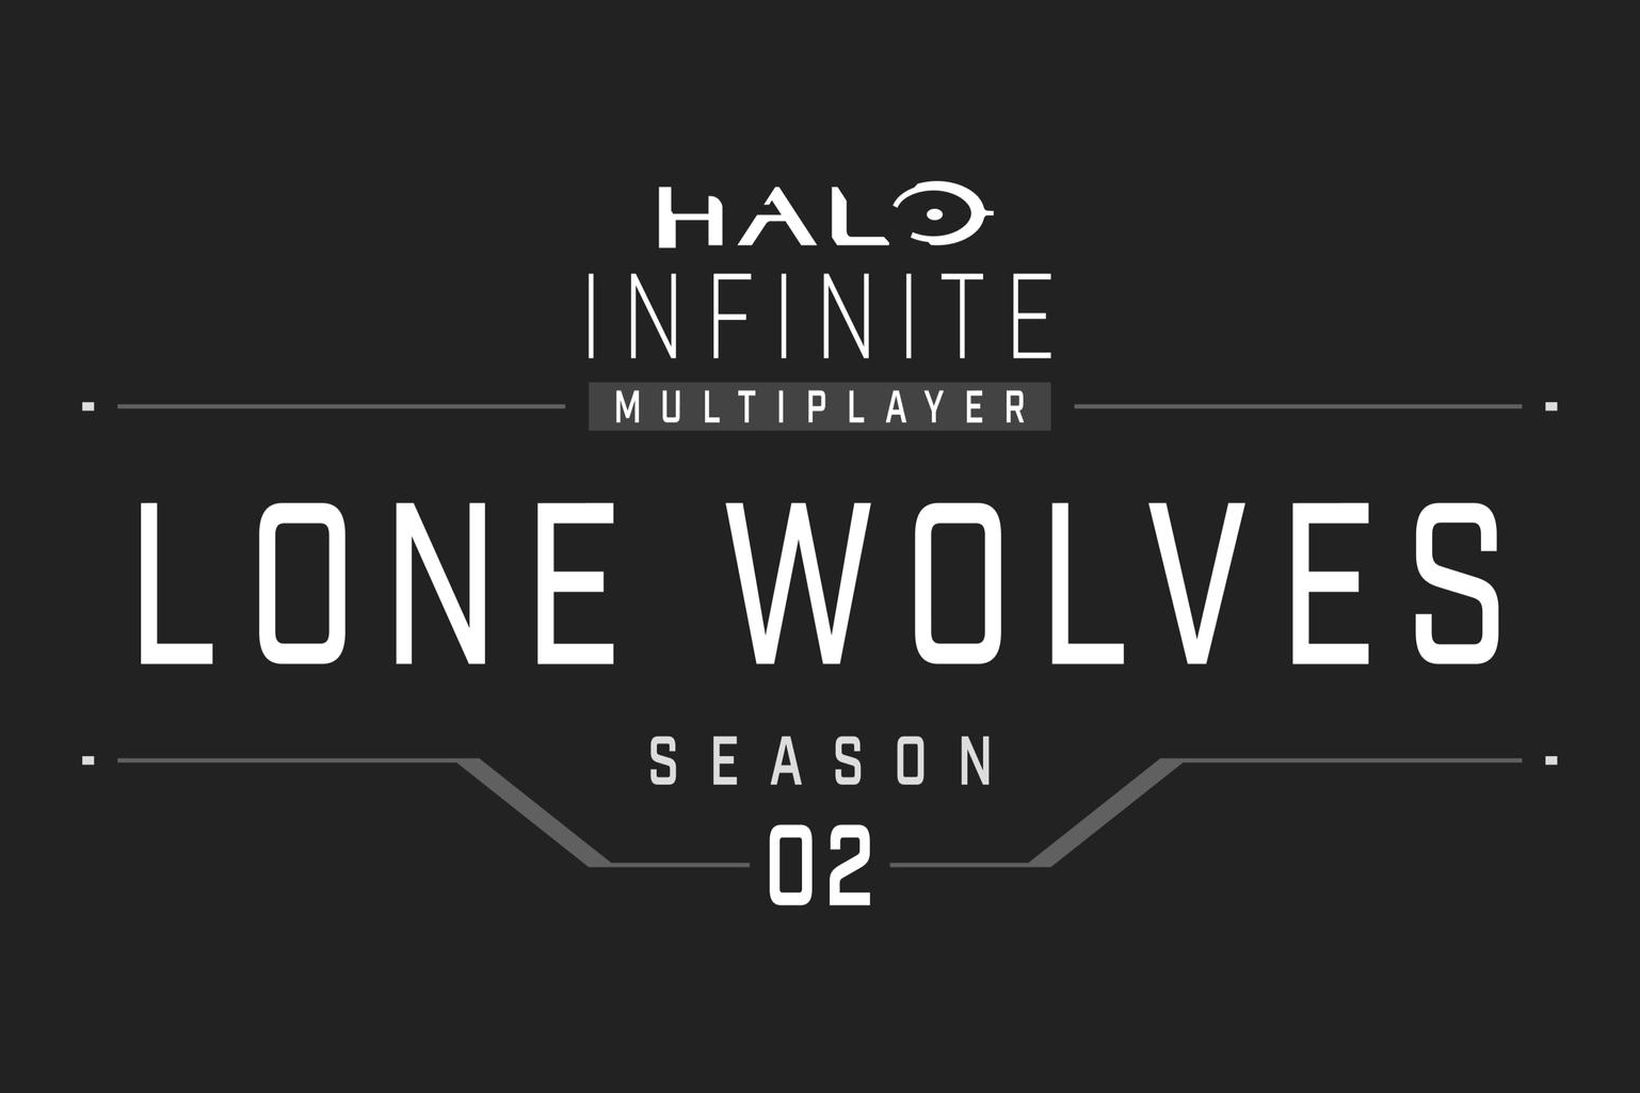 Annað tímabil Halo Infinite ber nafnið Lone Wolves, eða Einfarar.